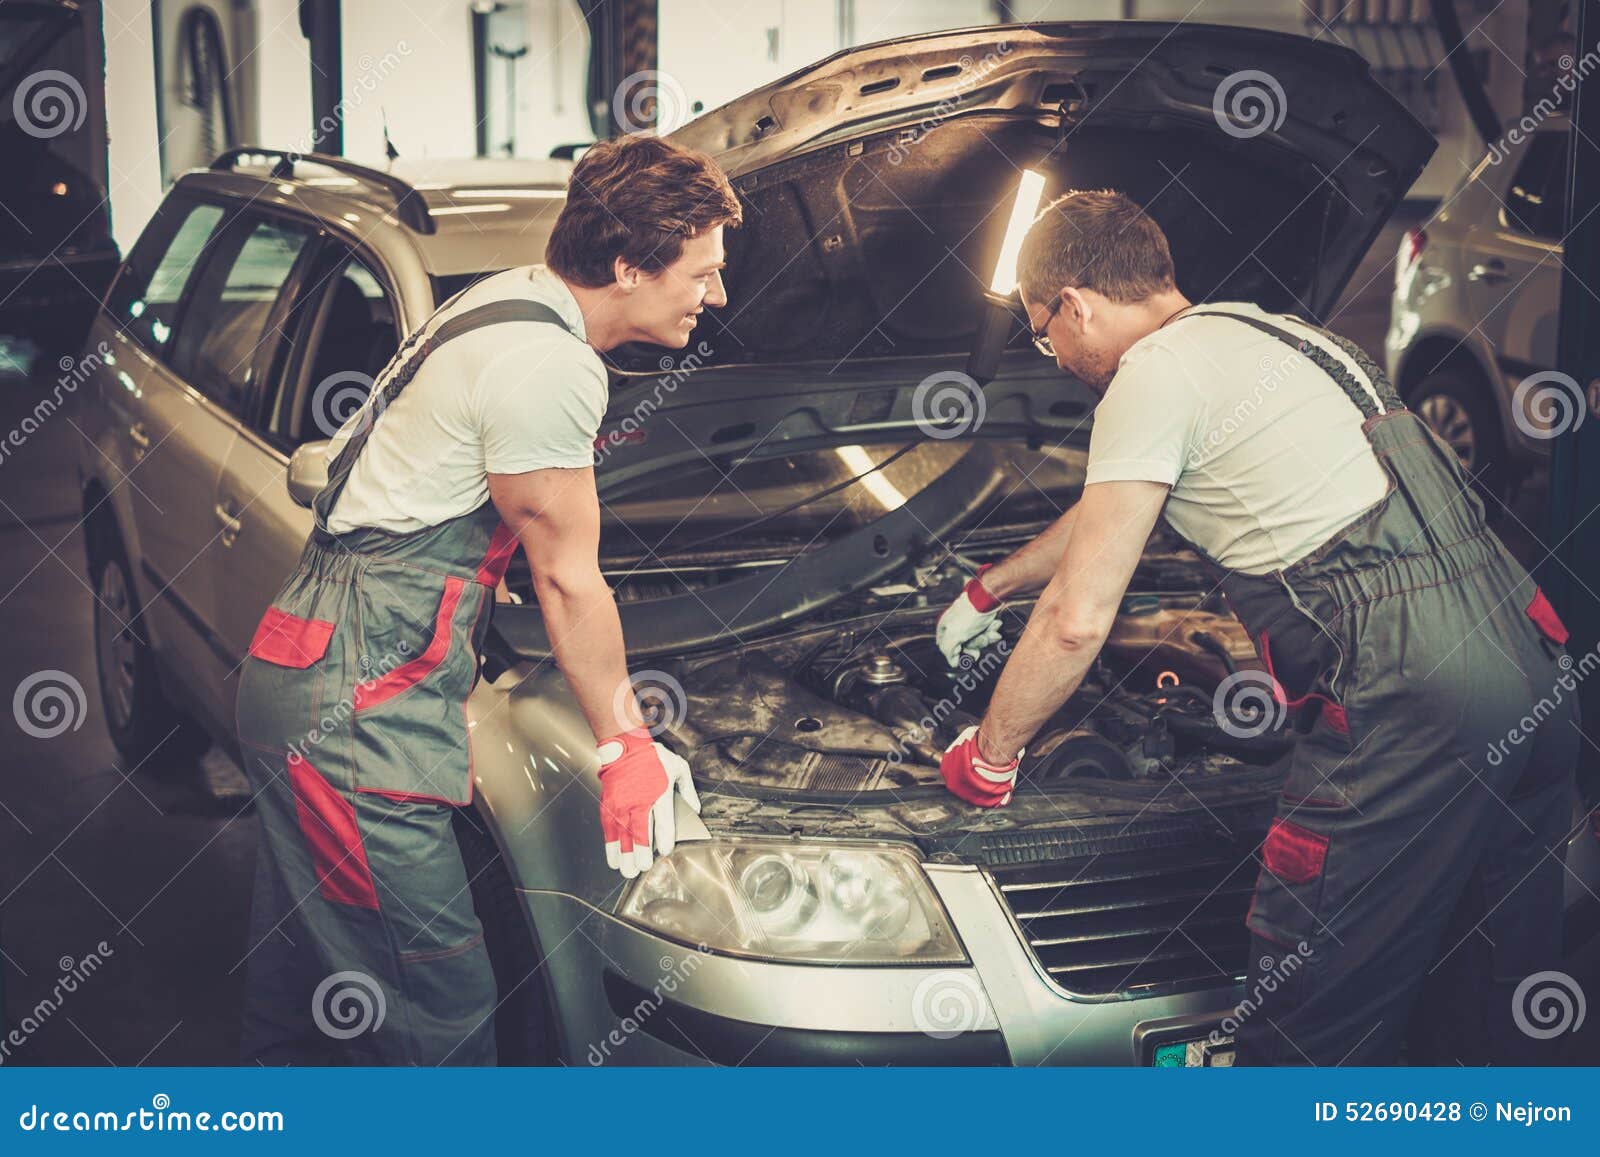 Ремонтирование машин. Механик в мастерской. Машина в ремонте в мастерской. Чинит авто в гараже.